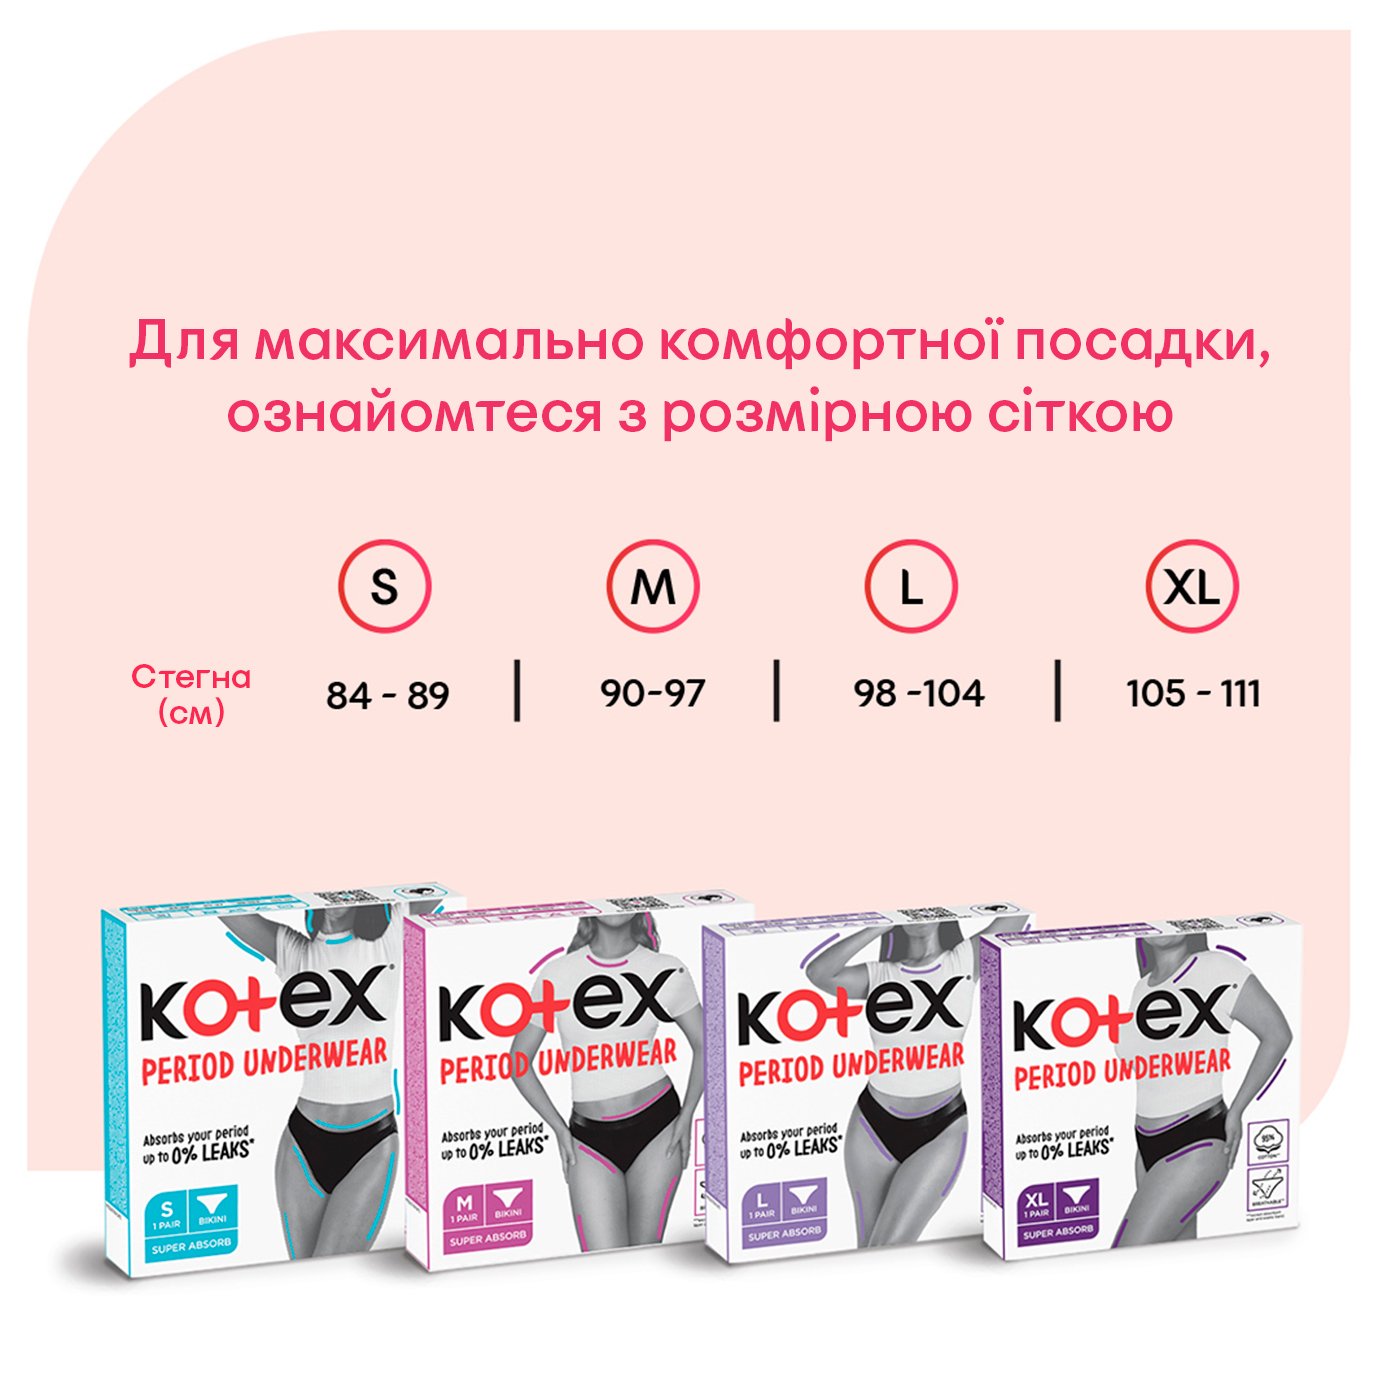 Менструальное белье Kotex размер S 1 шт. - фото 7